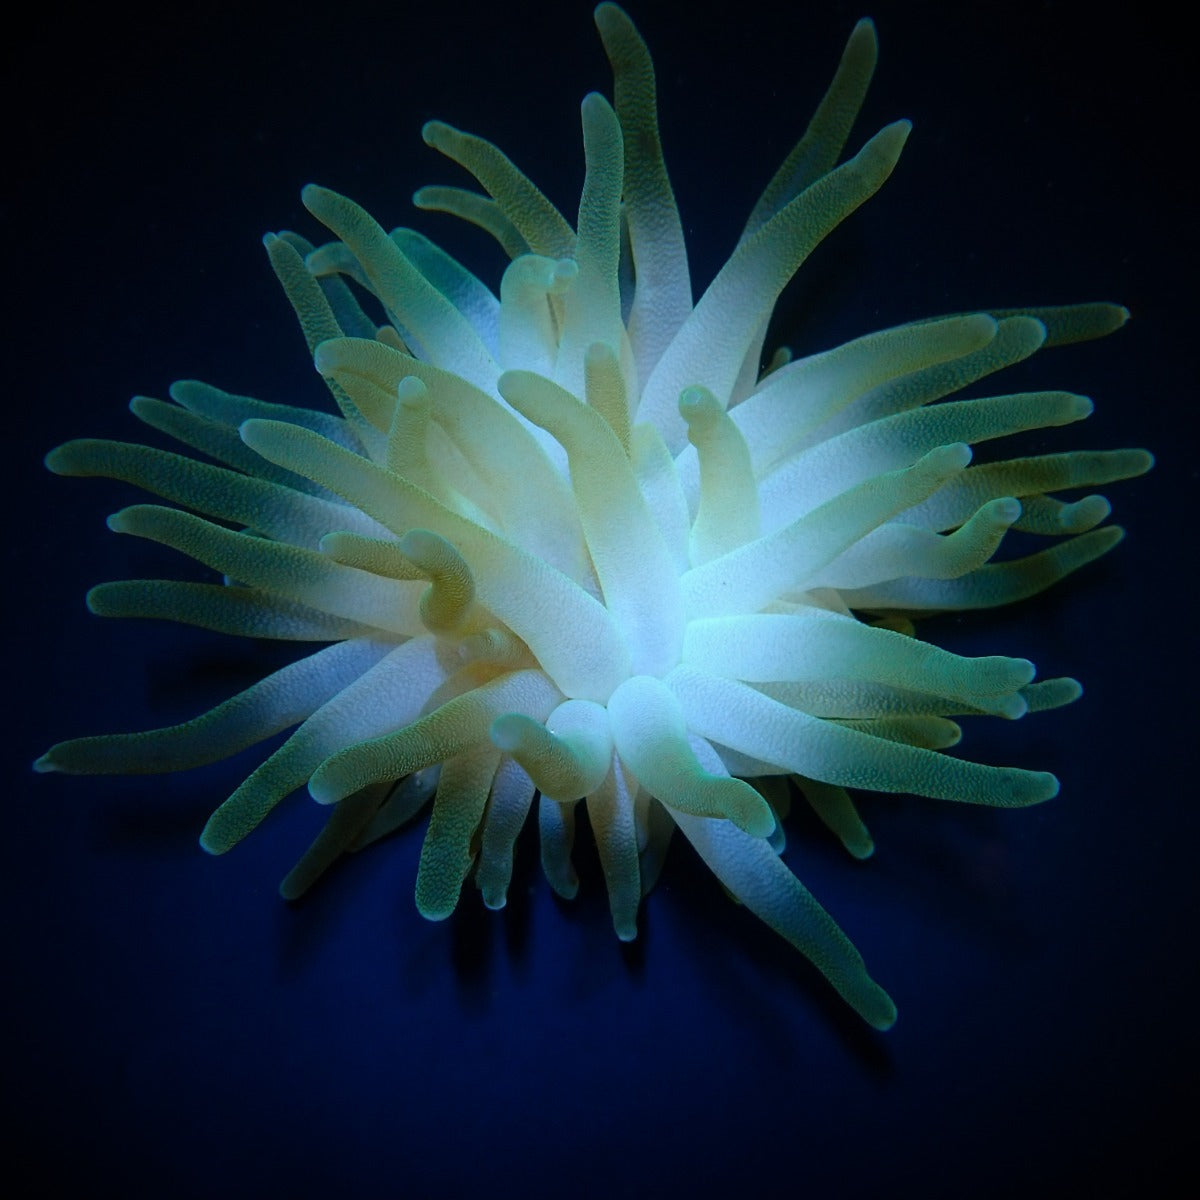 Condylactis gigantea - Giant Sea anemone